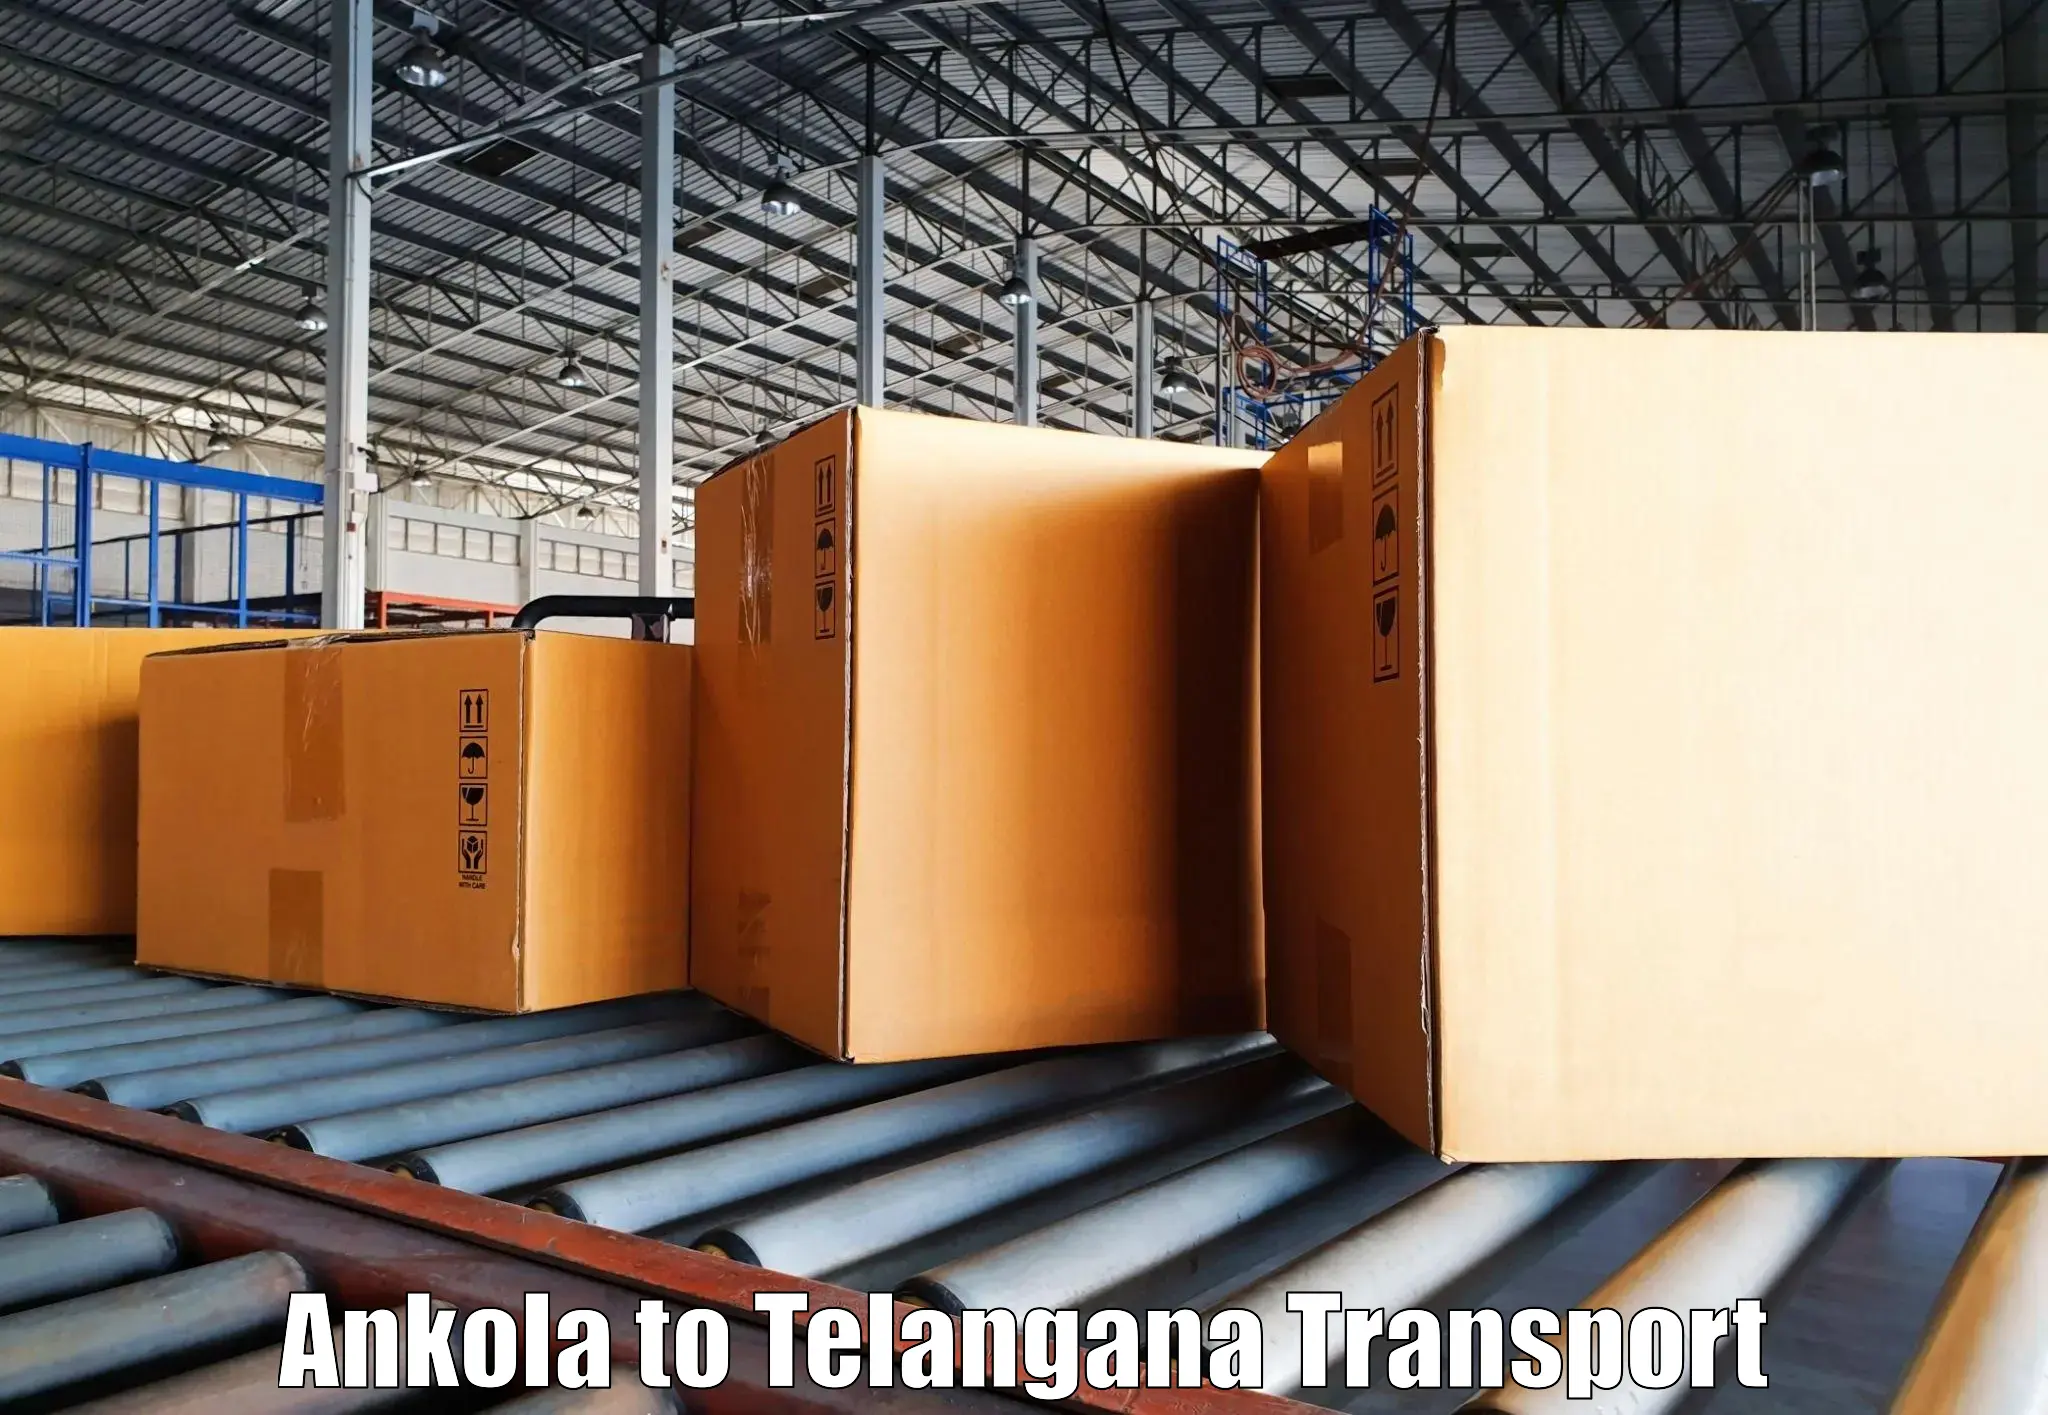 Transport in sharing Ankola to Aswaraopeta